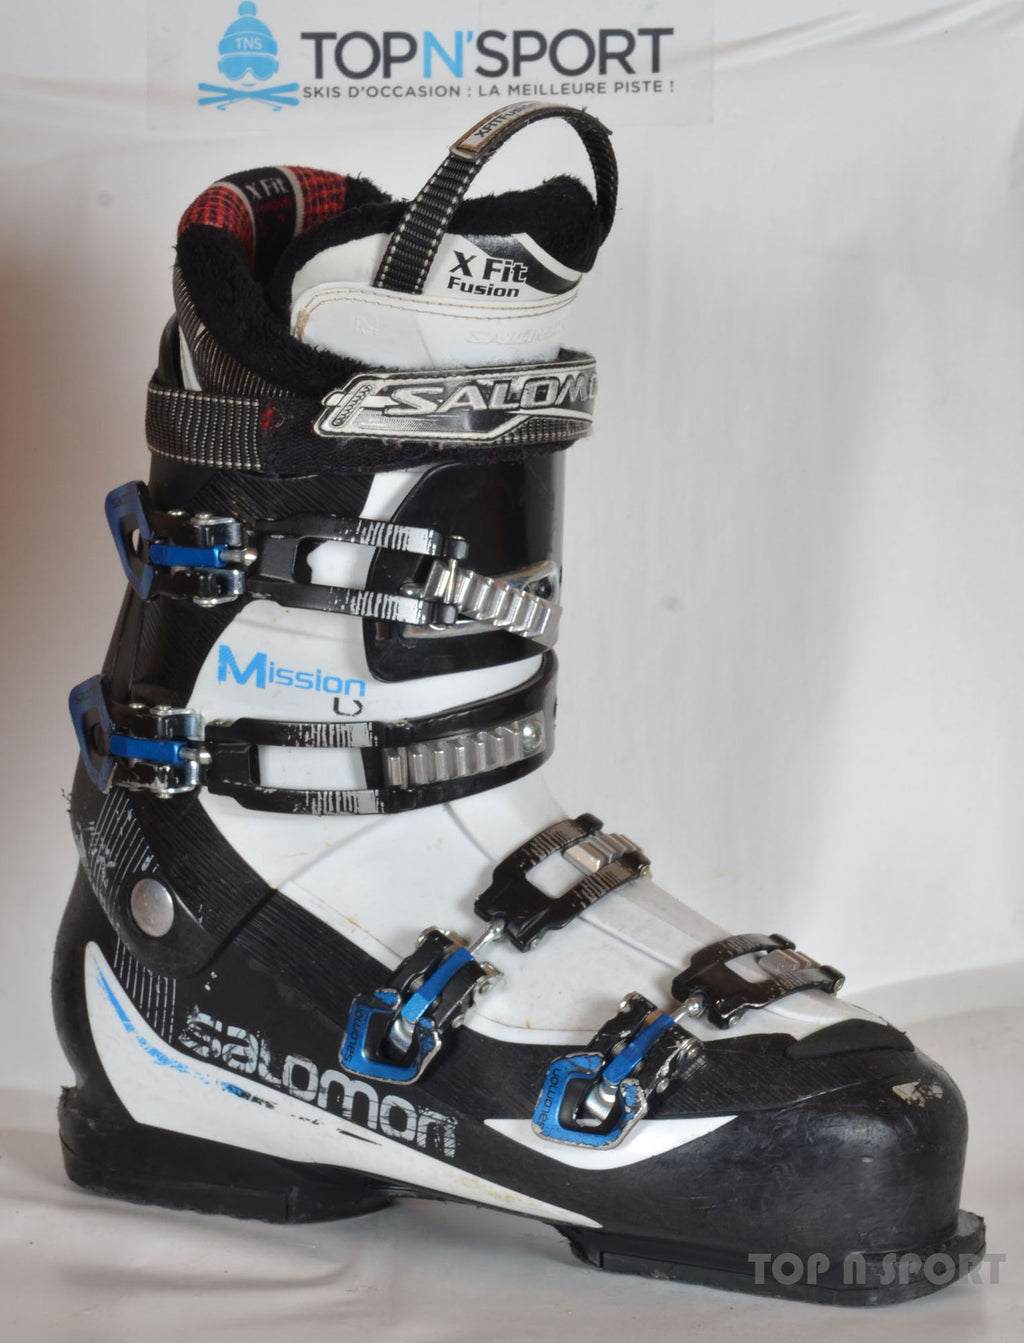 MISSION LX - chaussures de ski d'occasion - Achat chaussure... – Top N Sport, professionnel matériel de ski d'occasion